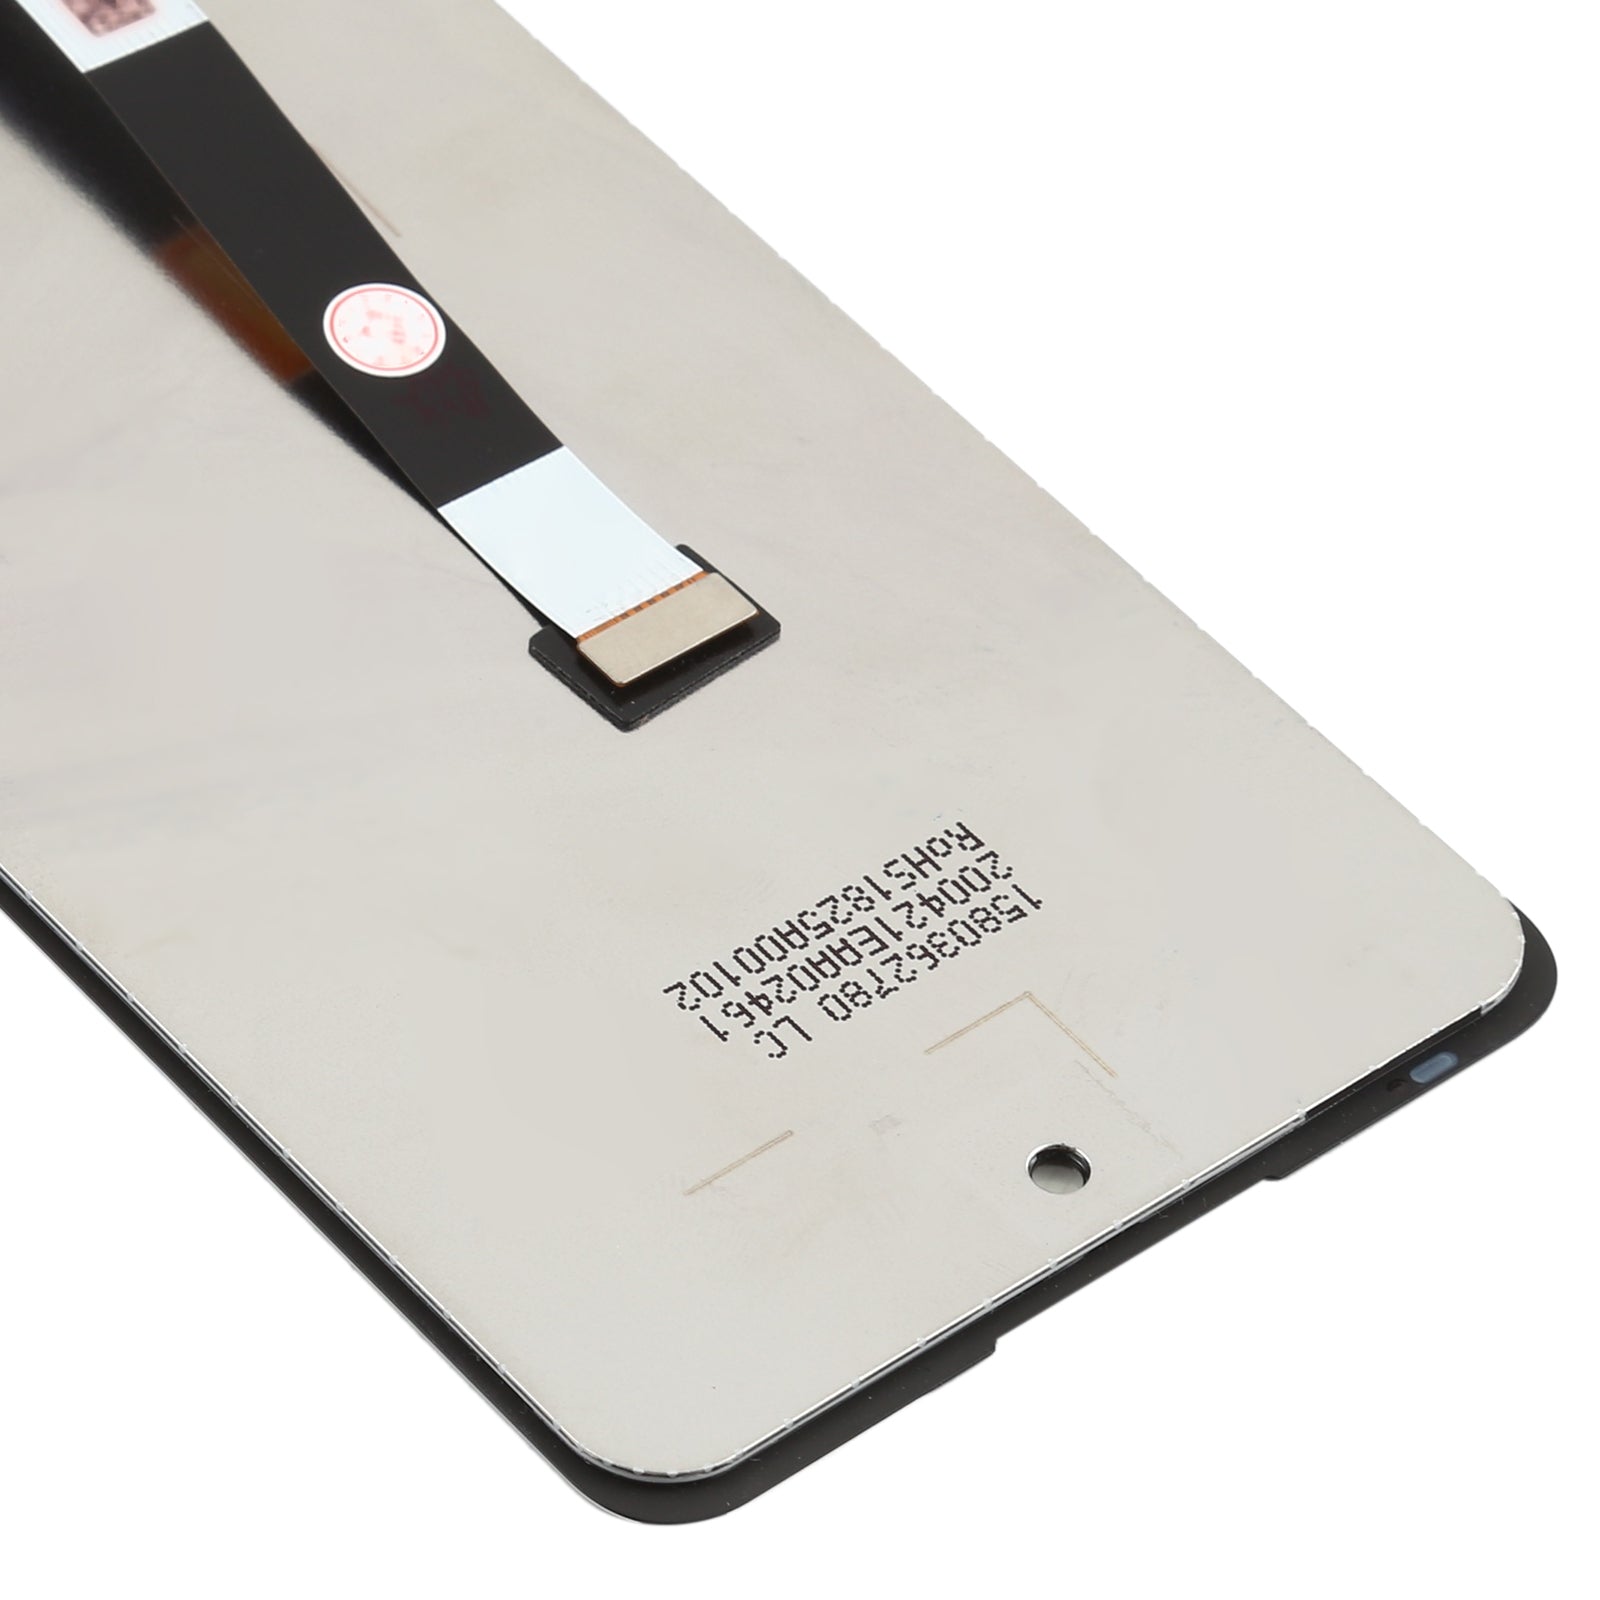 Pantalla LCD + Tactil Digitalizador LG Q92 5G